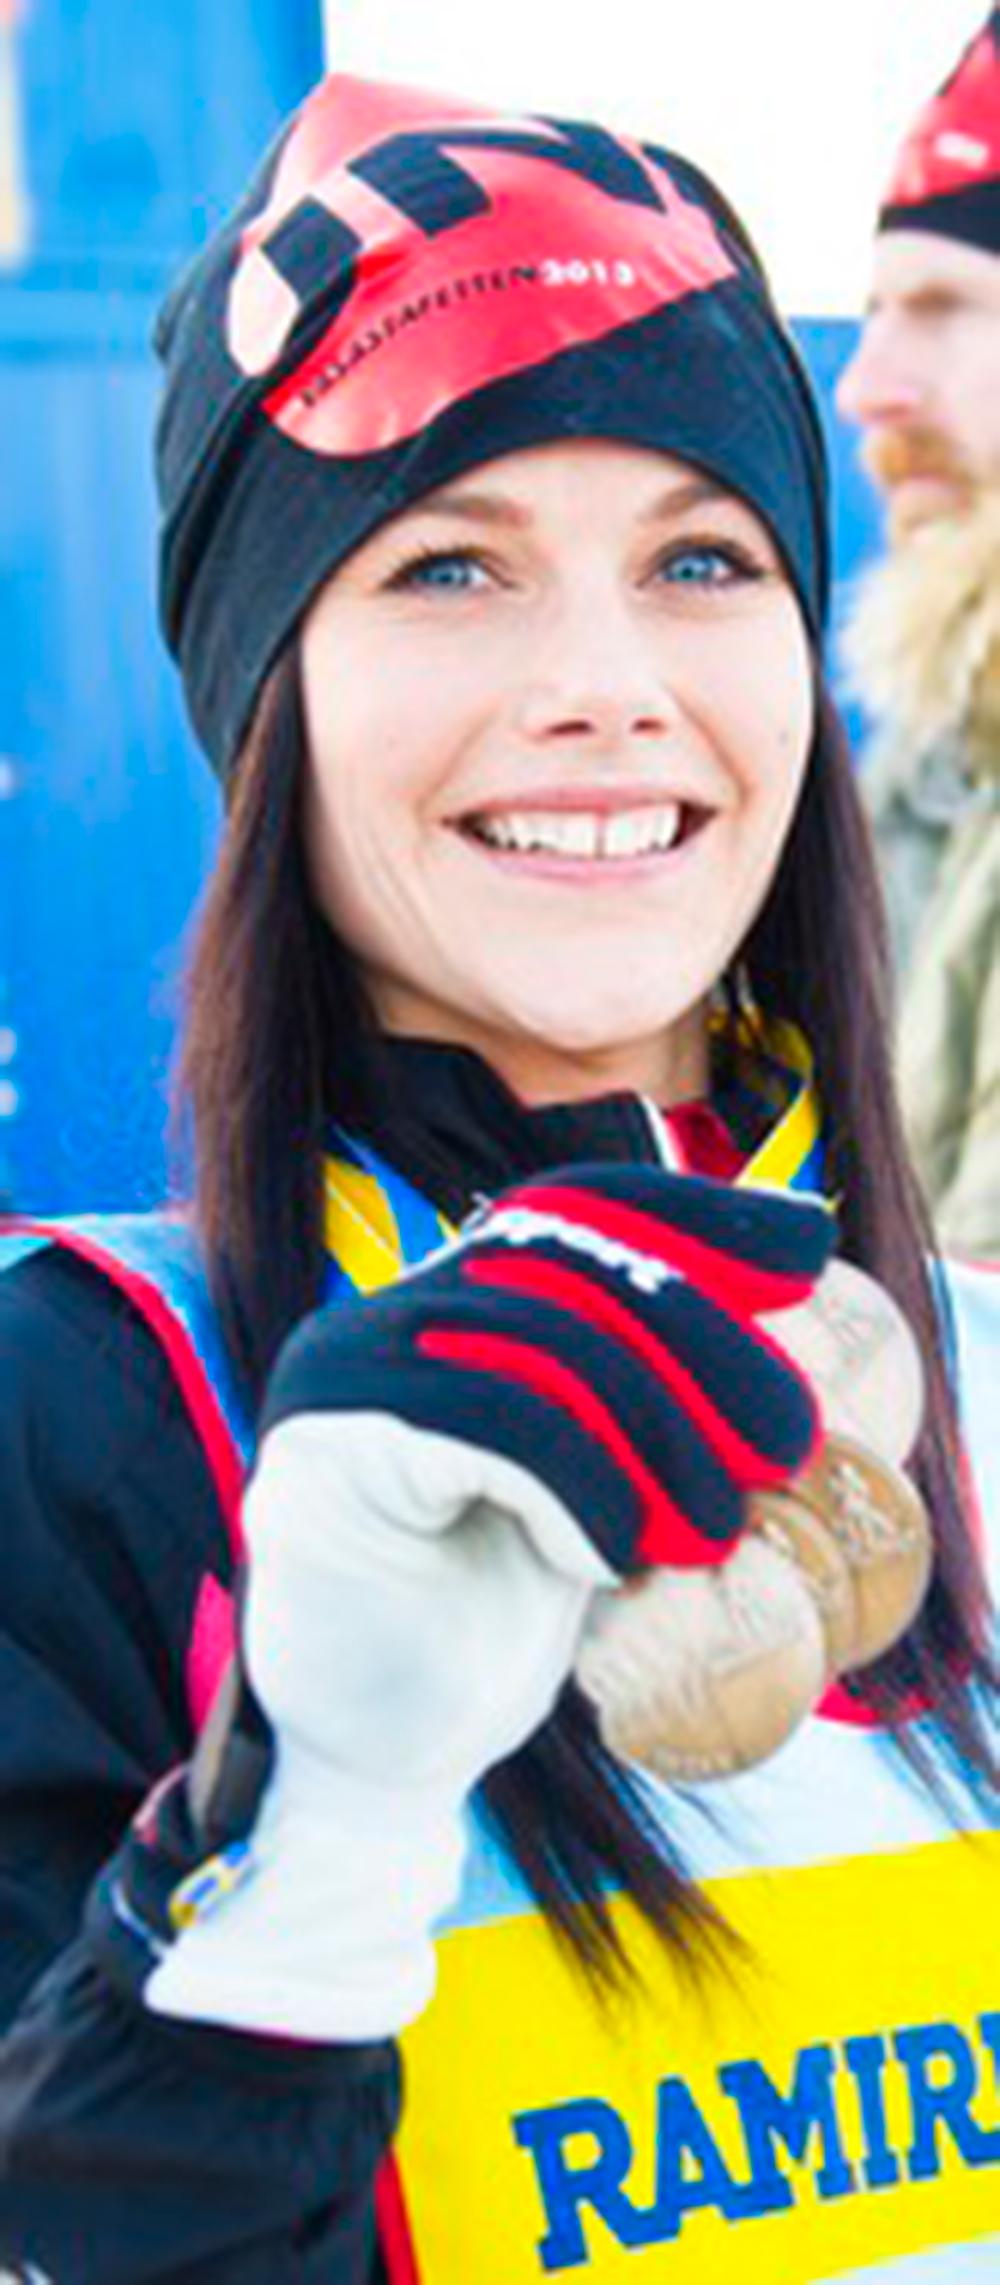 FLER SIDOR AV SOFIA Vintersport-Sofia: Sofia åker skidor både utför och horisontellt. 2013 körde hon Stafettvasan tillsammans med Carl Philip och ett kompisgäng.